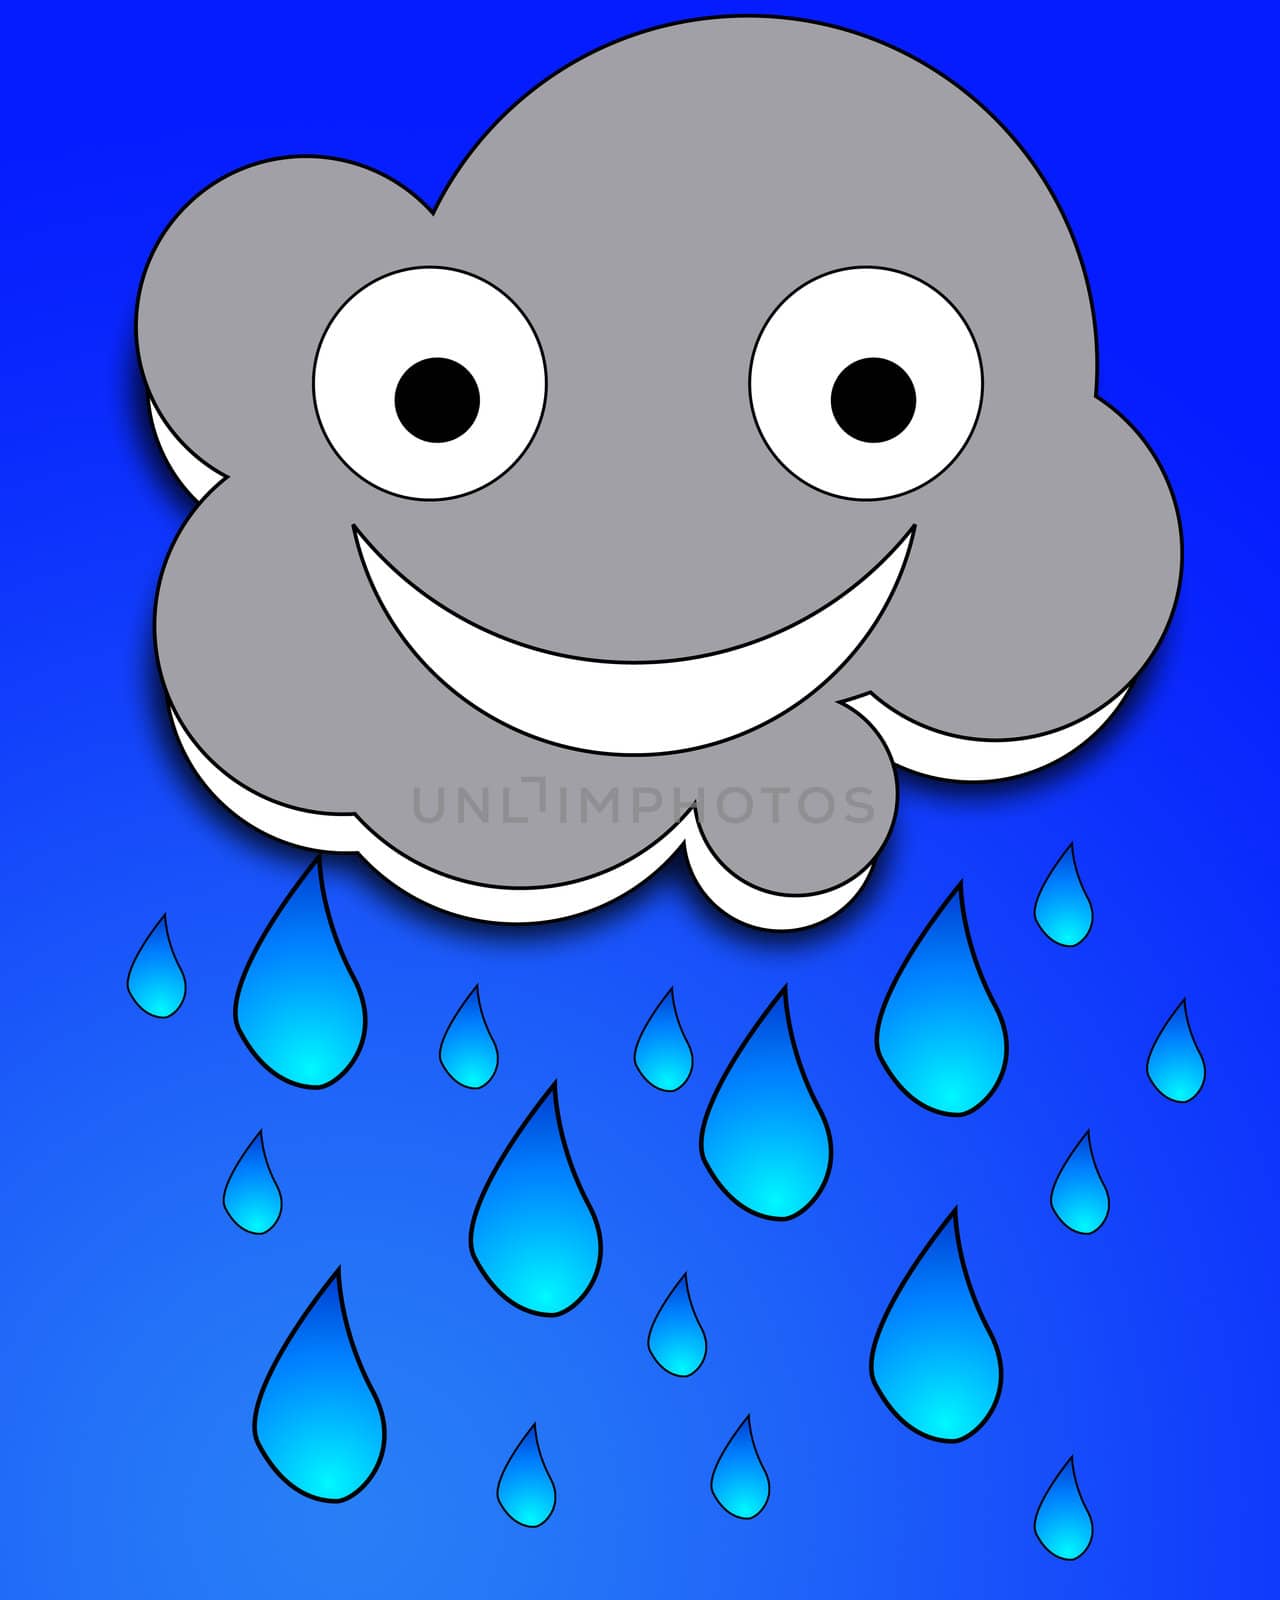 A happy but very rainy cartoon cloud.